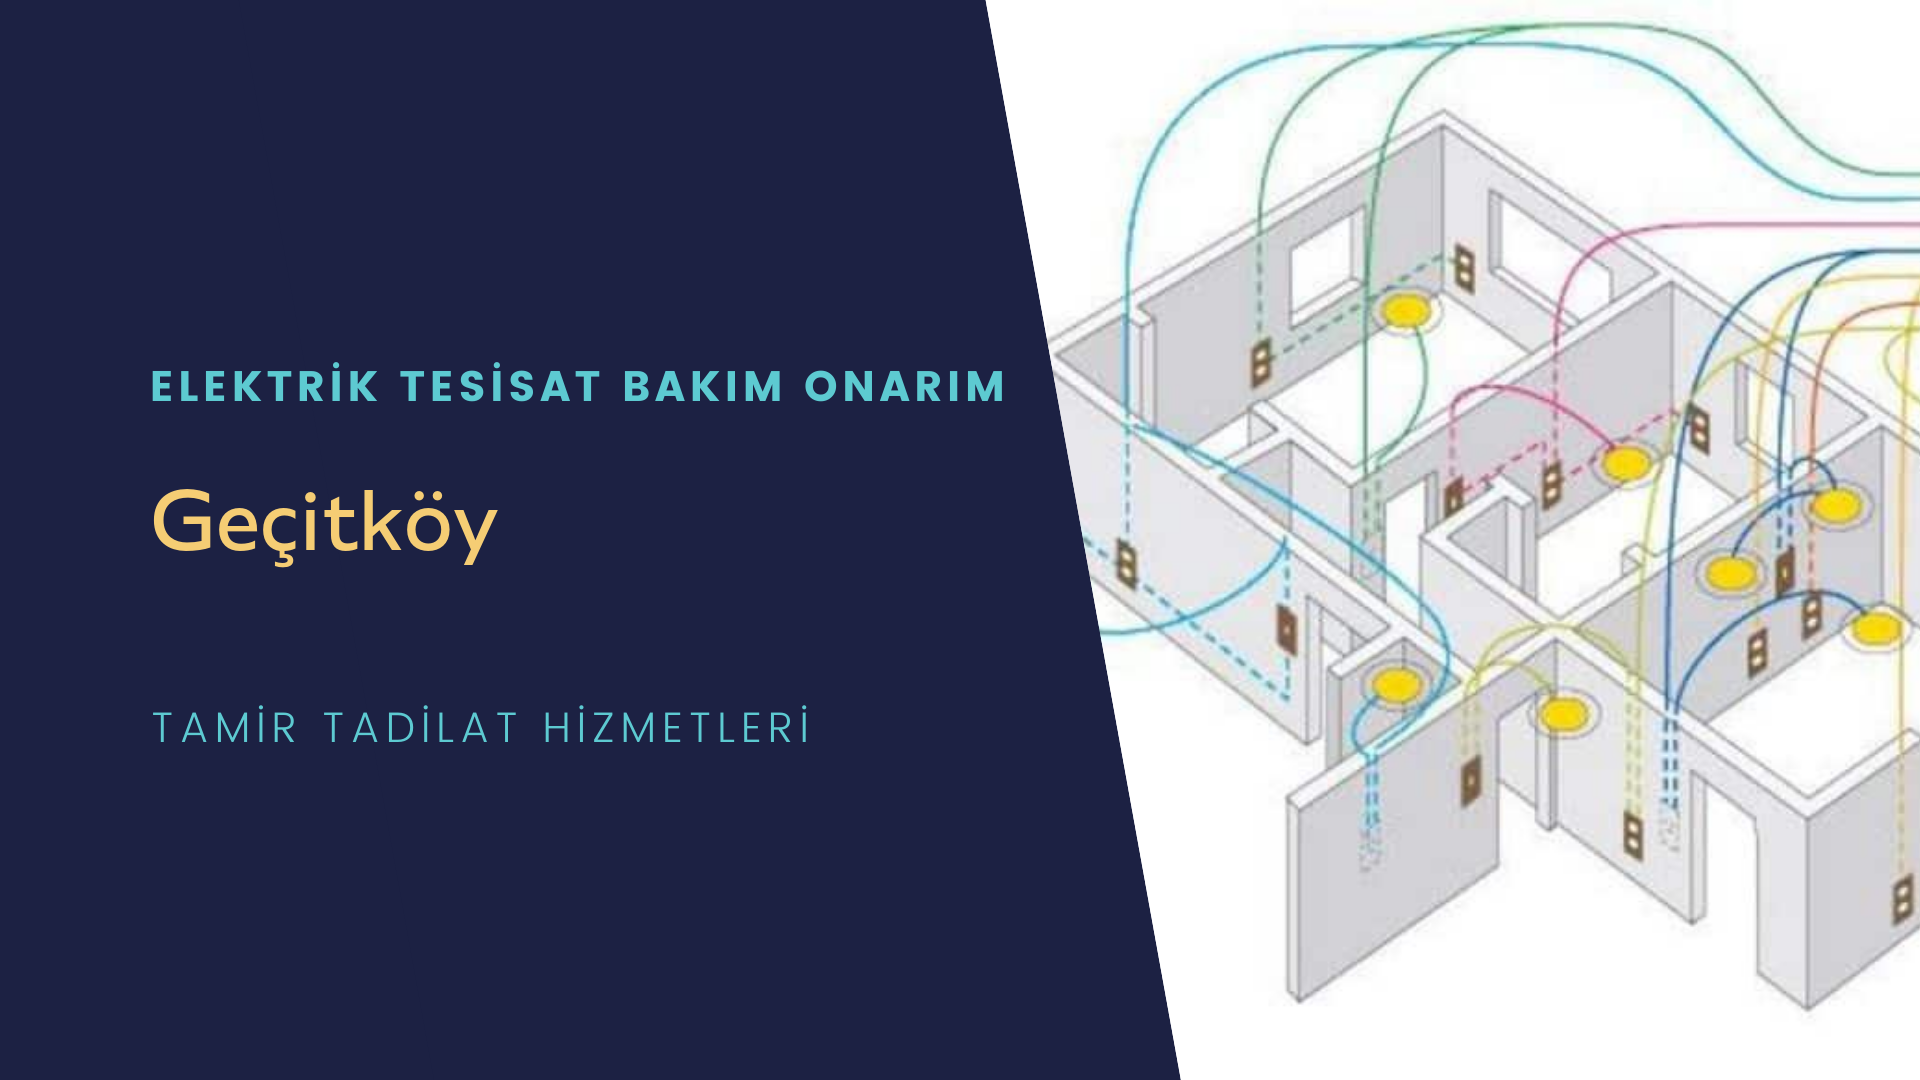 Geçitköy'de elektrik tesisatı ustalarımı arıyorsunuz doğru adrestenizi Geçitköy elektrik tesisatı ustalarımız 7/24 sizlere hizmet vermekten mutluluk duyar.